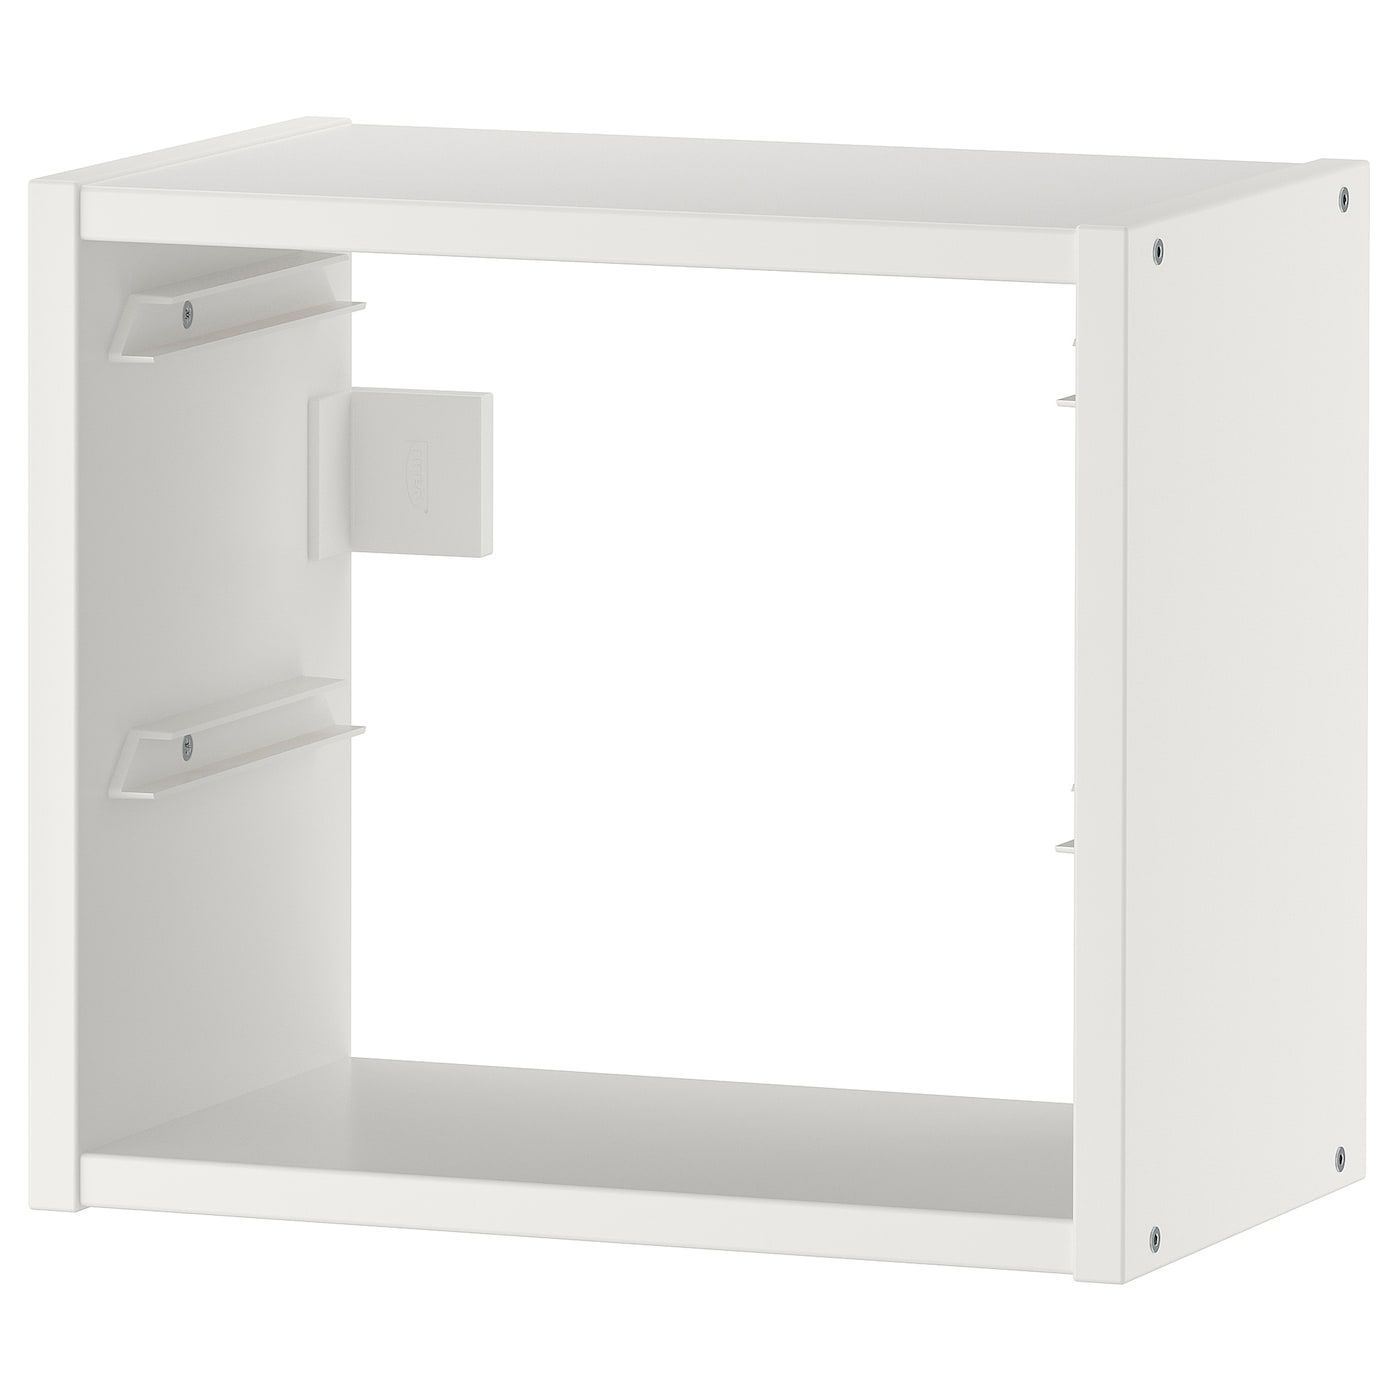 Полка настенная - TROFAST IKEA/ТРУФАСТ ИКЕА, 34x21x30 см, белый